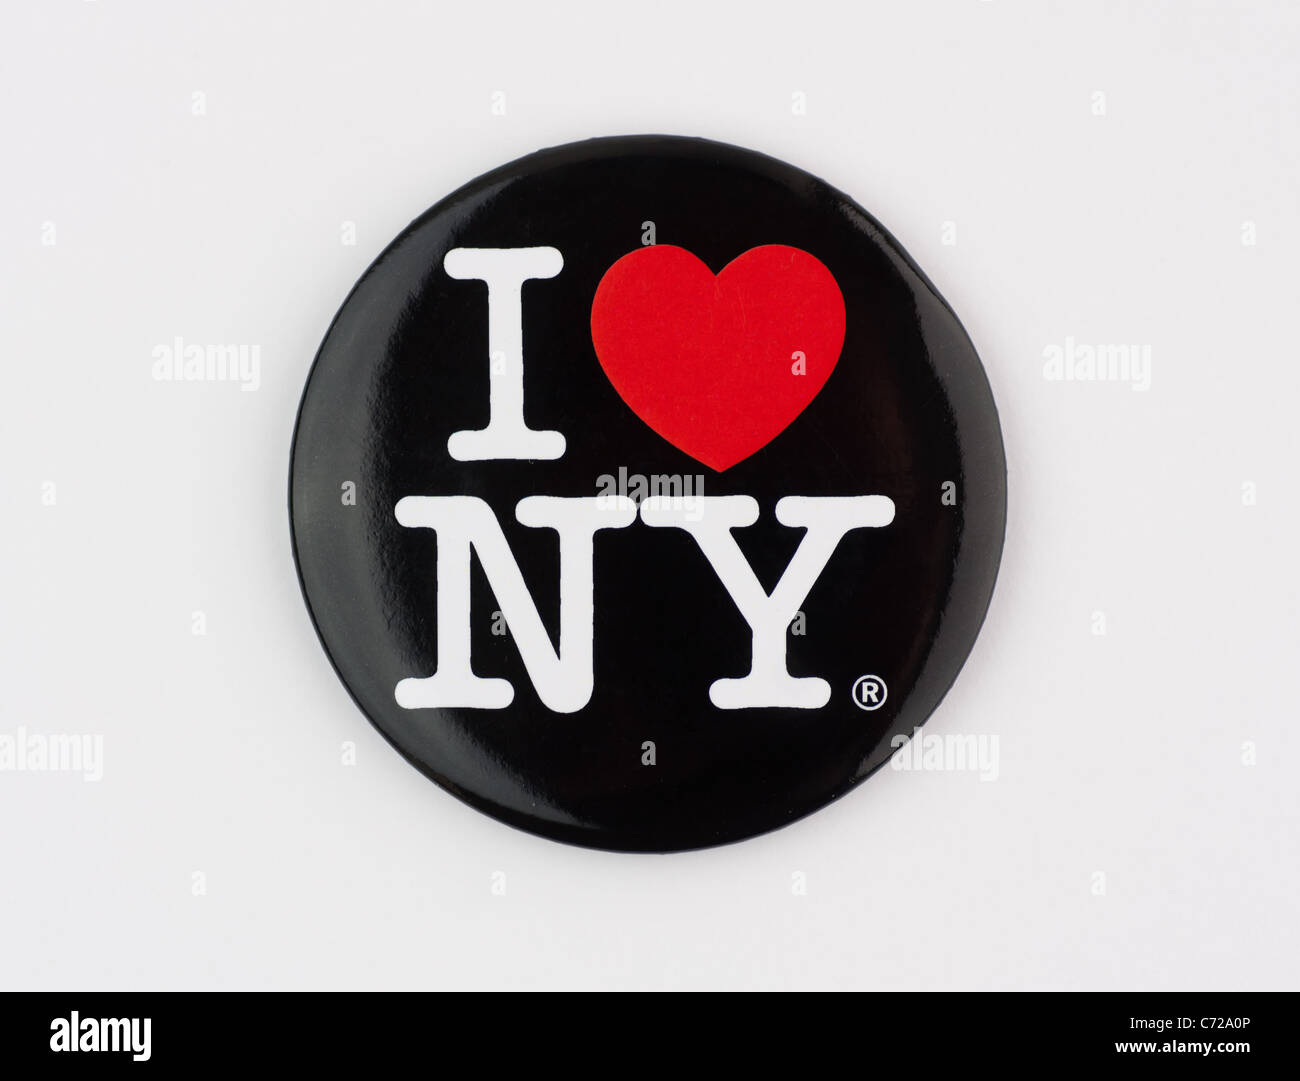 Münster, Allemagne - 10 septembre 2011 : photo montre le célèbre "i love ny" logo de la ville de new york, imprimé sur un badge. Banque D'Images